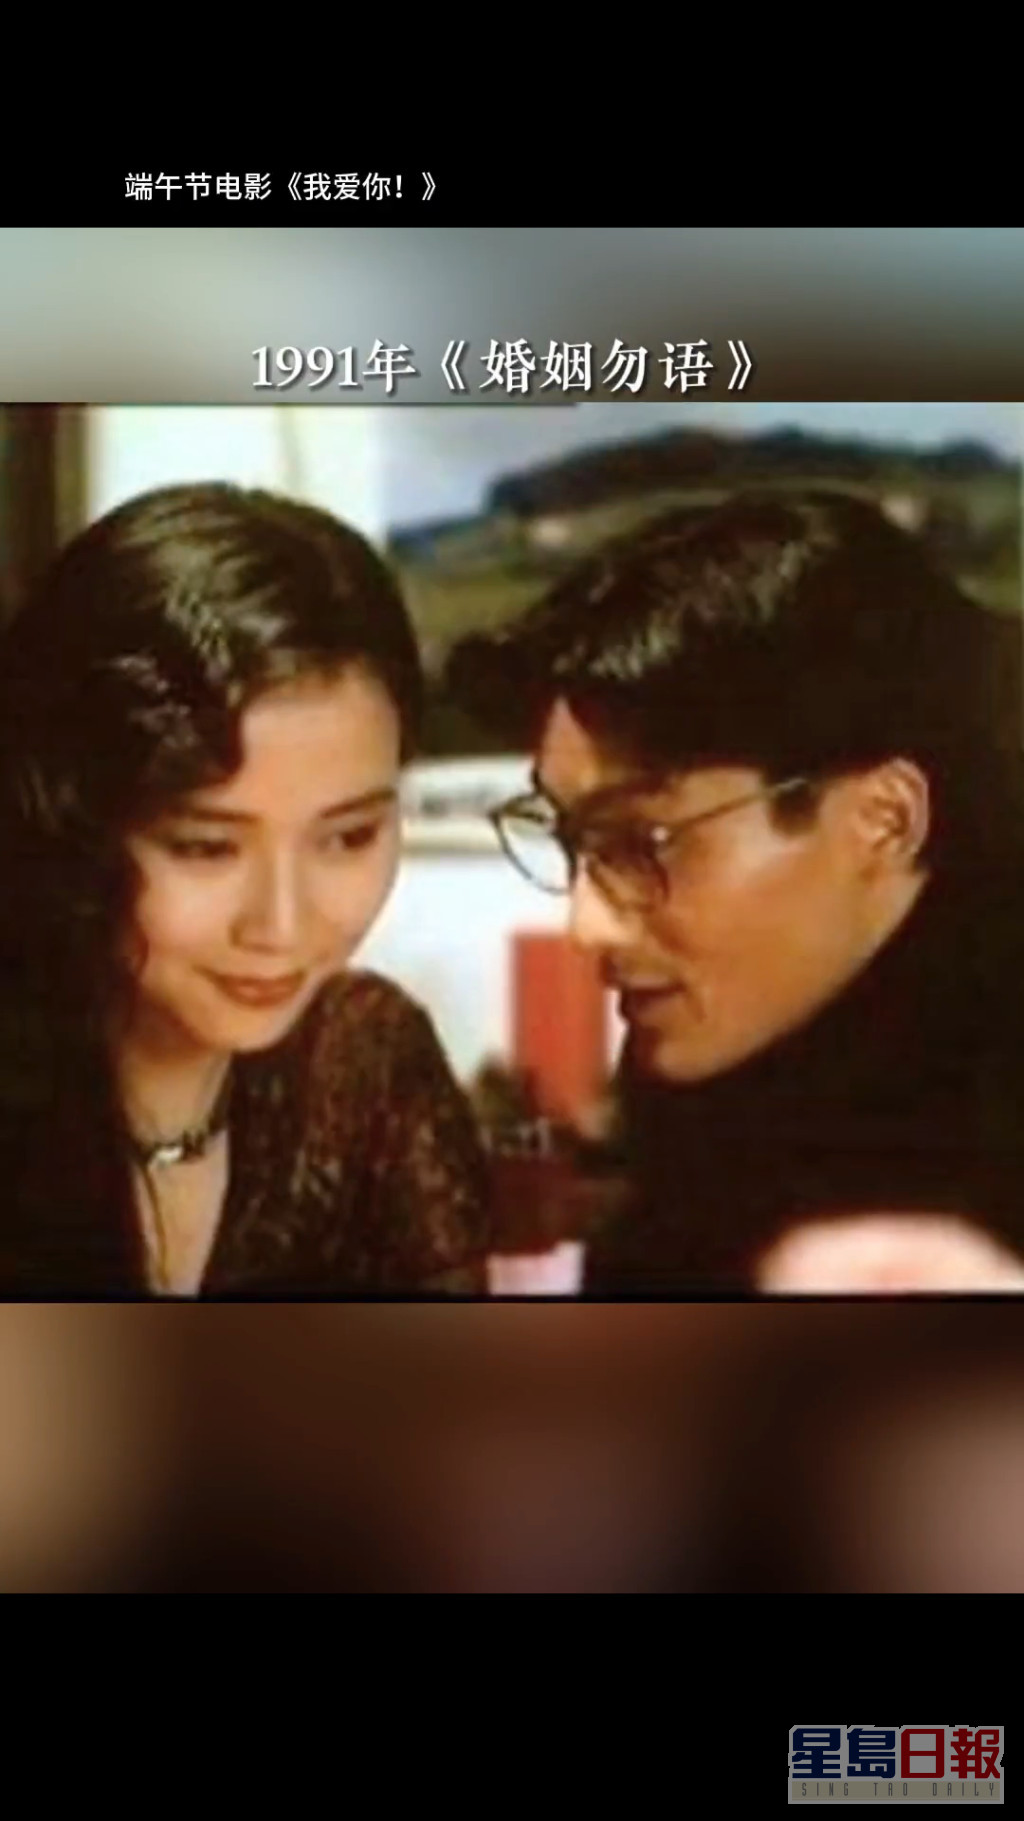 梁家辉与叶童曾合拍1991年电影《婚姻勿语》。